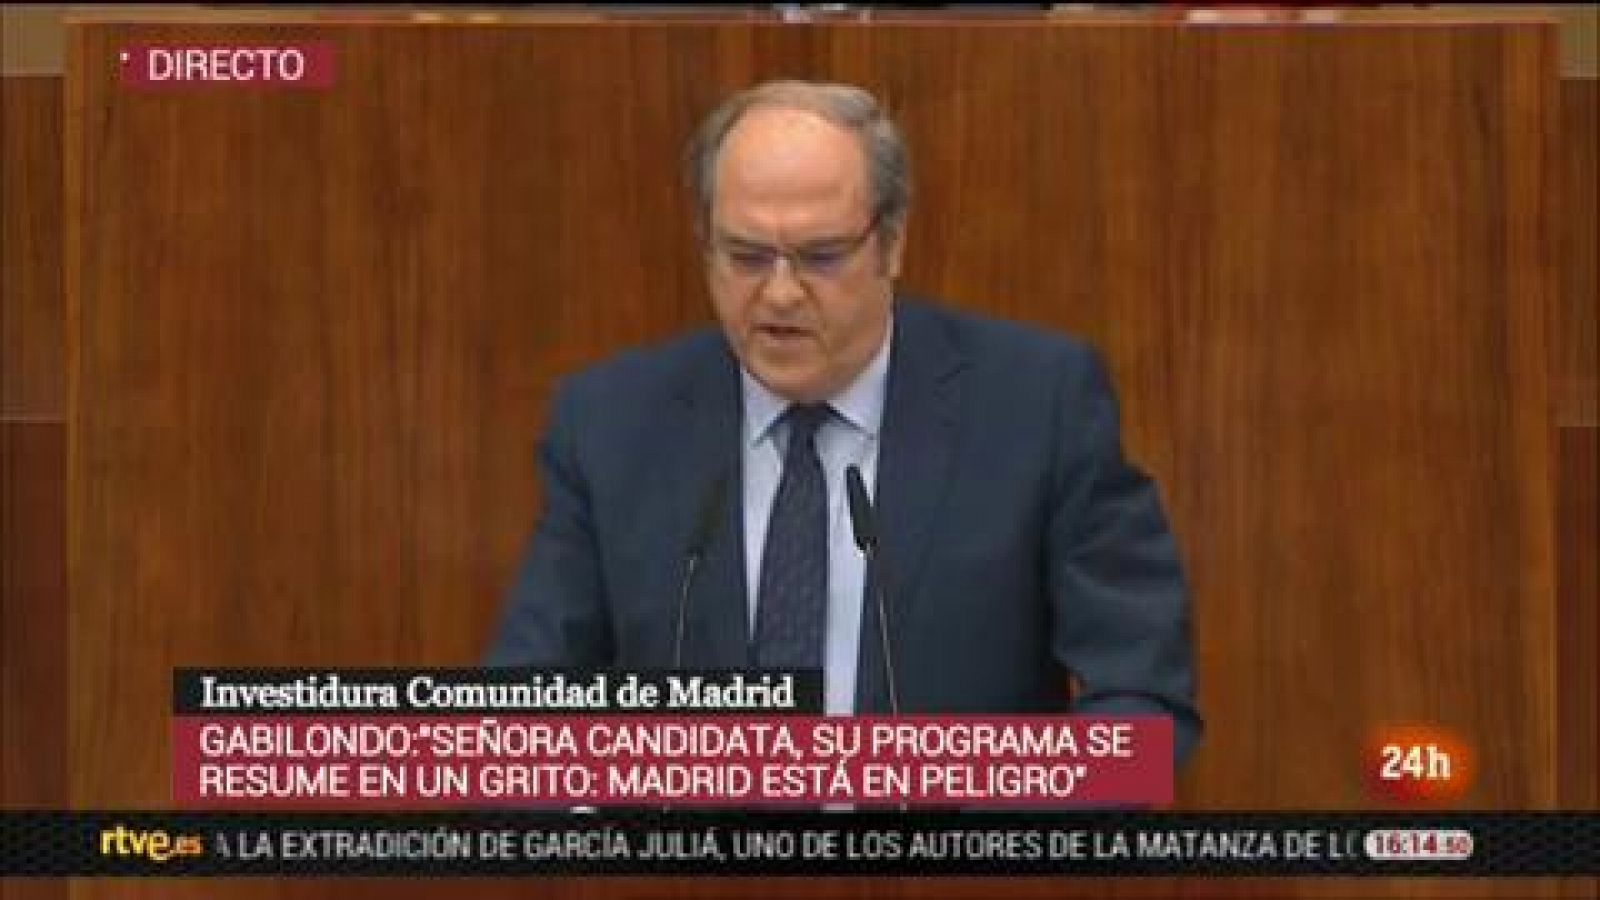 Gabilondo: "Madrid no puede ser un bastión contra el gobierno de España cuando no es de su color político"